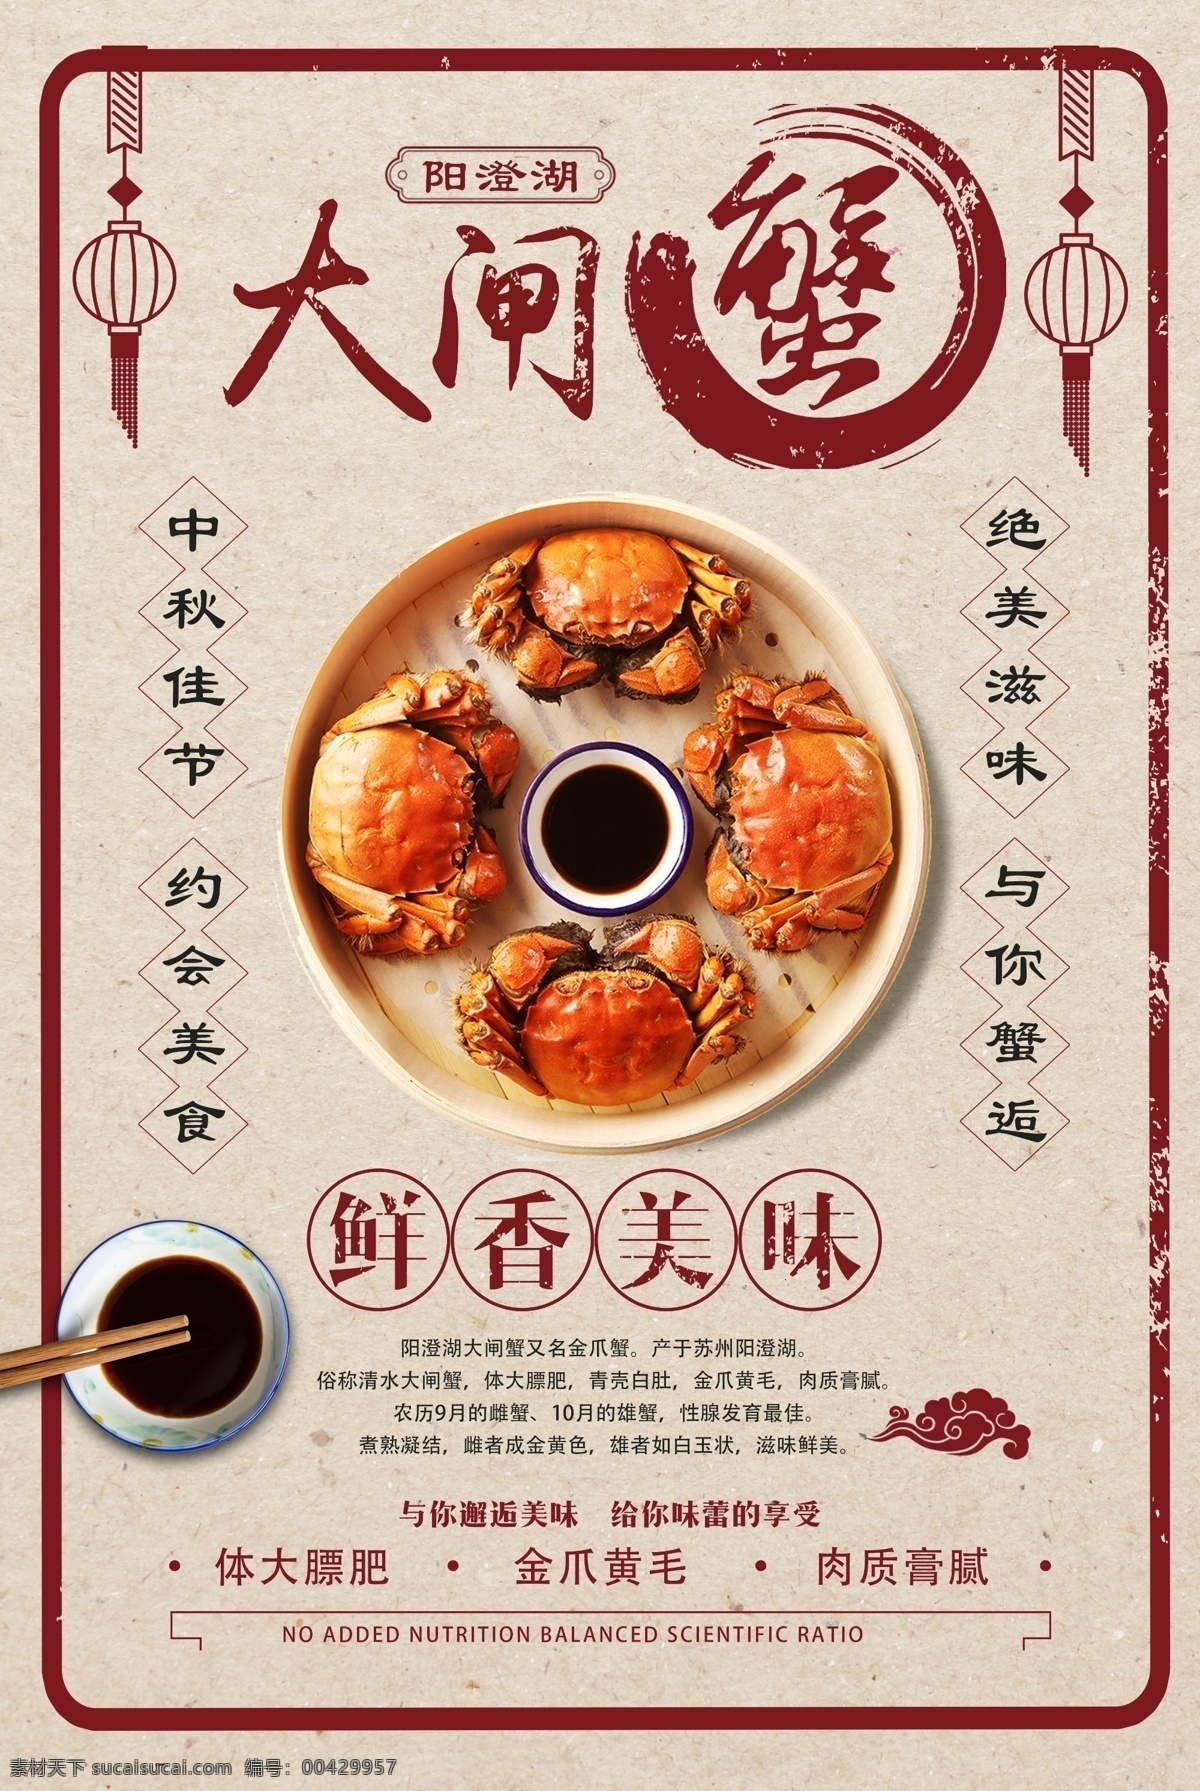 大闸蟹 美食 活动 促销 宣传海报 宣传 海报 餐饮美食 类